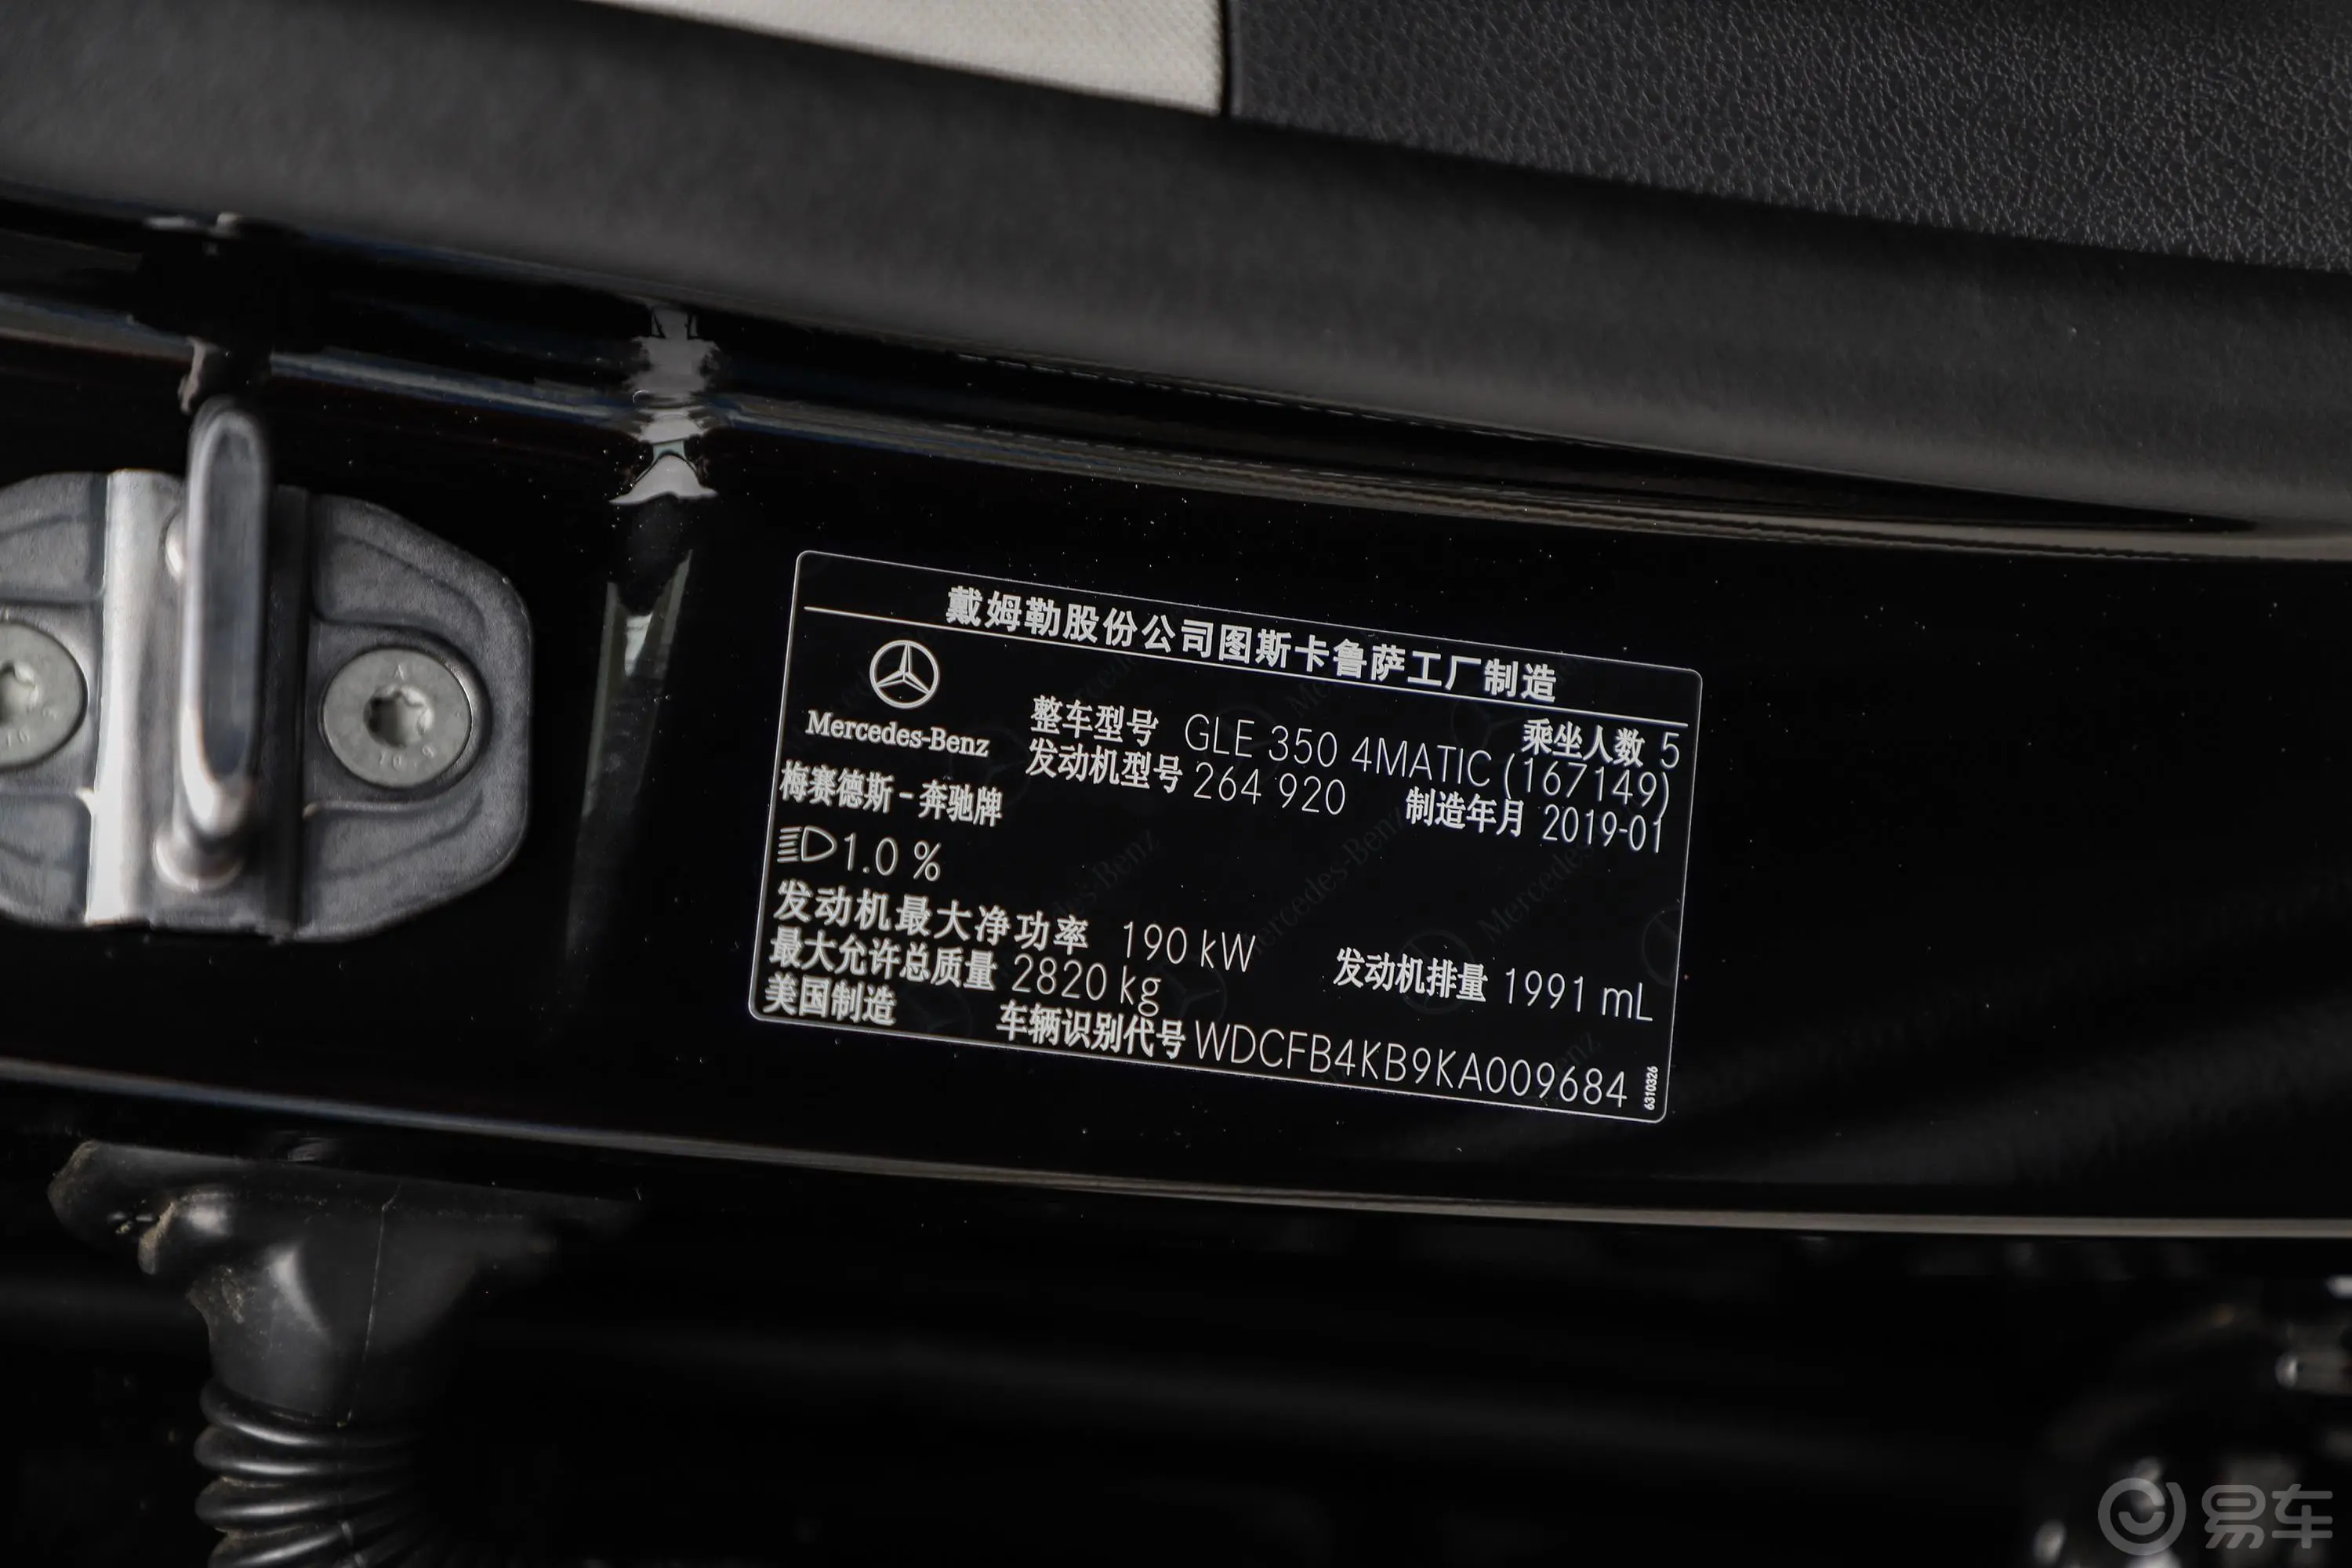 奔驰GLEGLE 350 4MATIC 时尚版车辆信息铭牌